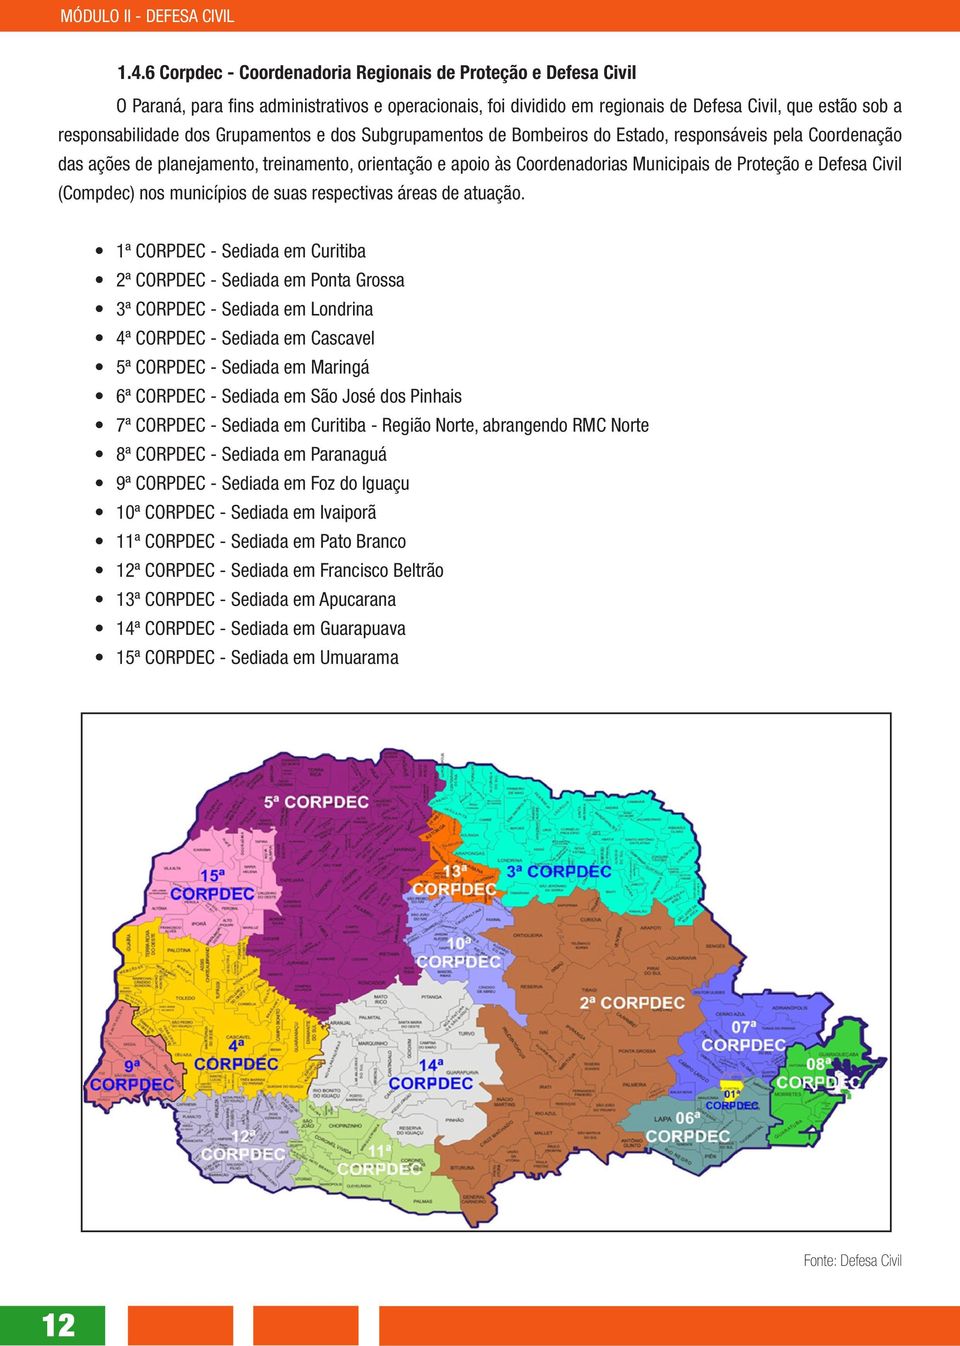 Civil (Compdec) nos municípios de suas respectivas áreas de atuação.